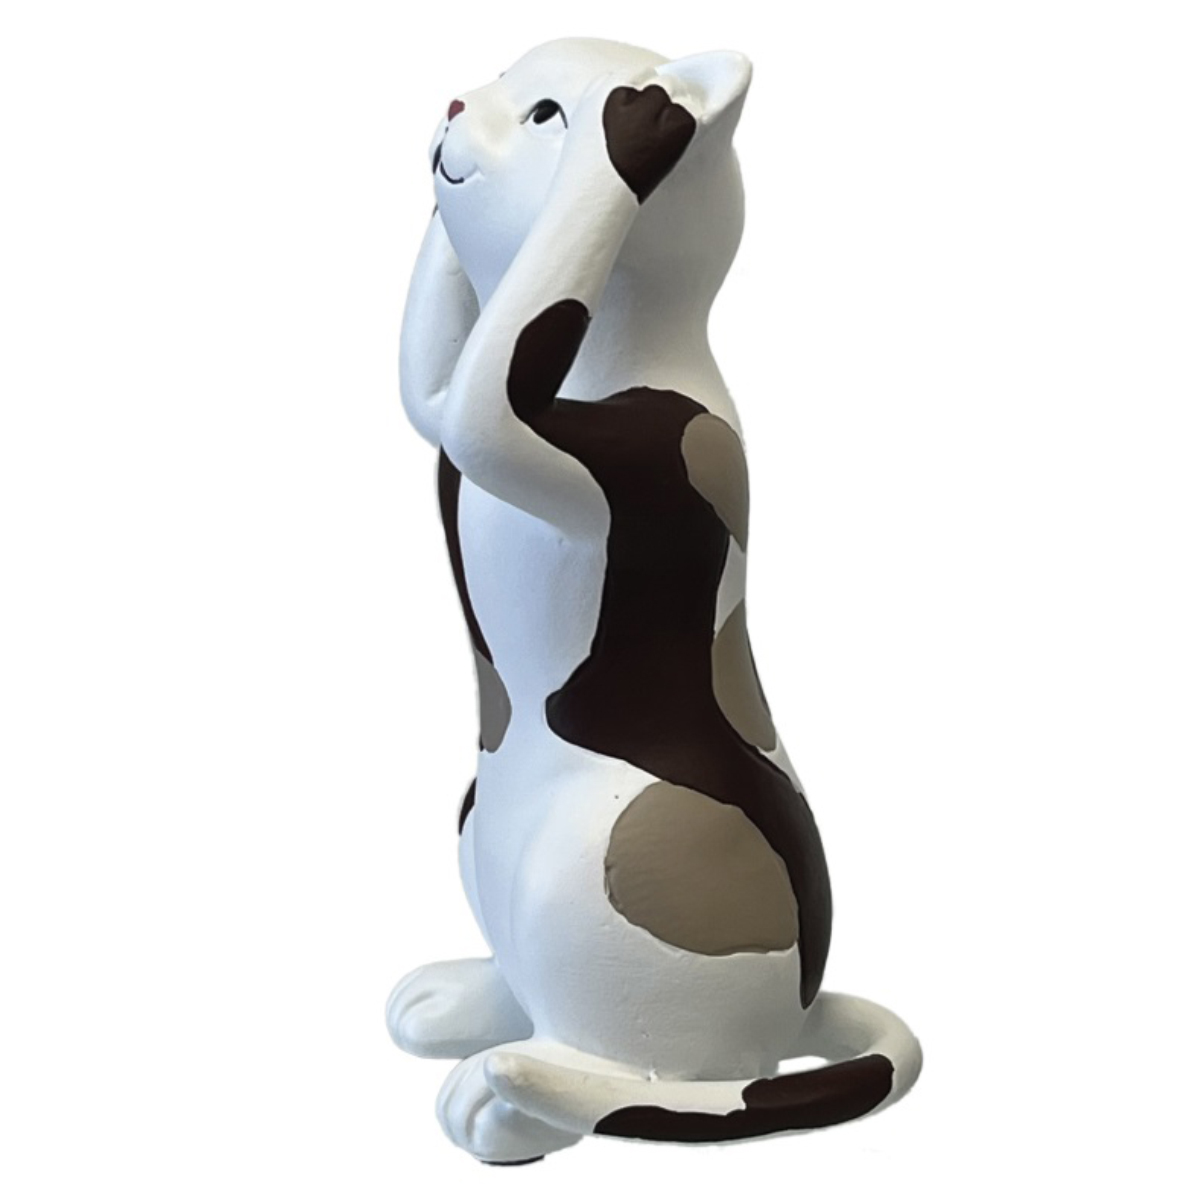 Figurine resin decorative cat